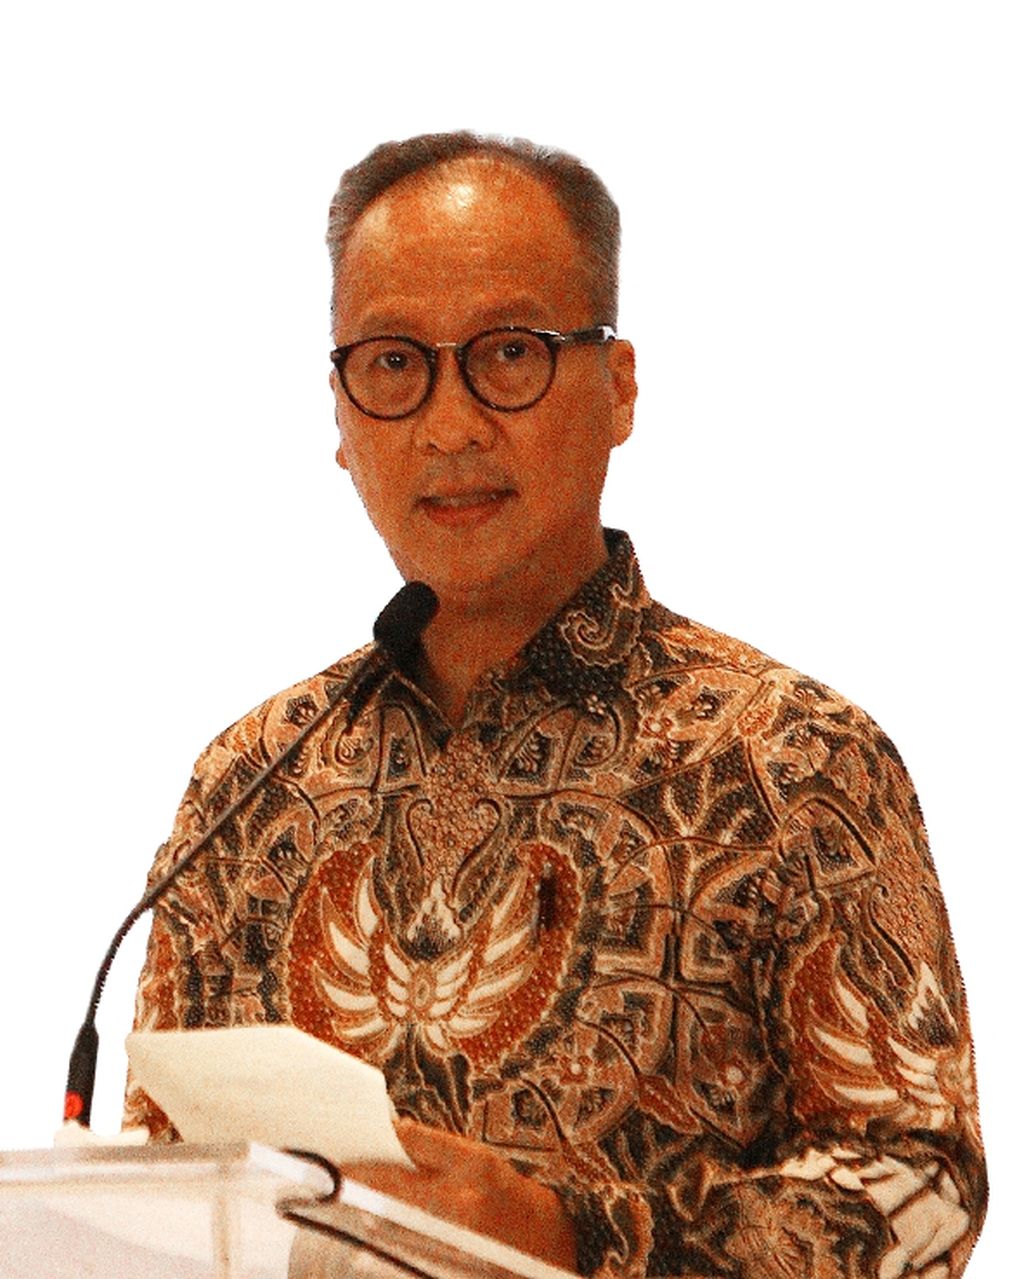 Menteri Perindustrian RI Agus Gumiwang Kartasasmita dalam acara "Gala Dinner" Program G20 Kompas di Hotel Pullman, Jakarta Pusat, Rabu (19/10/2022). Acara ini merupakan bentuk kolaborasi Kompas bersama PLN, East Ventures, dan Lazada Indonesia.